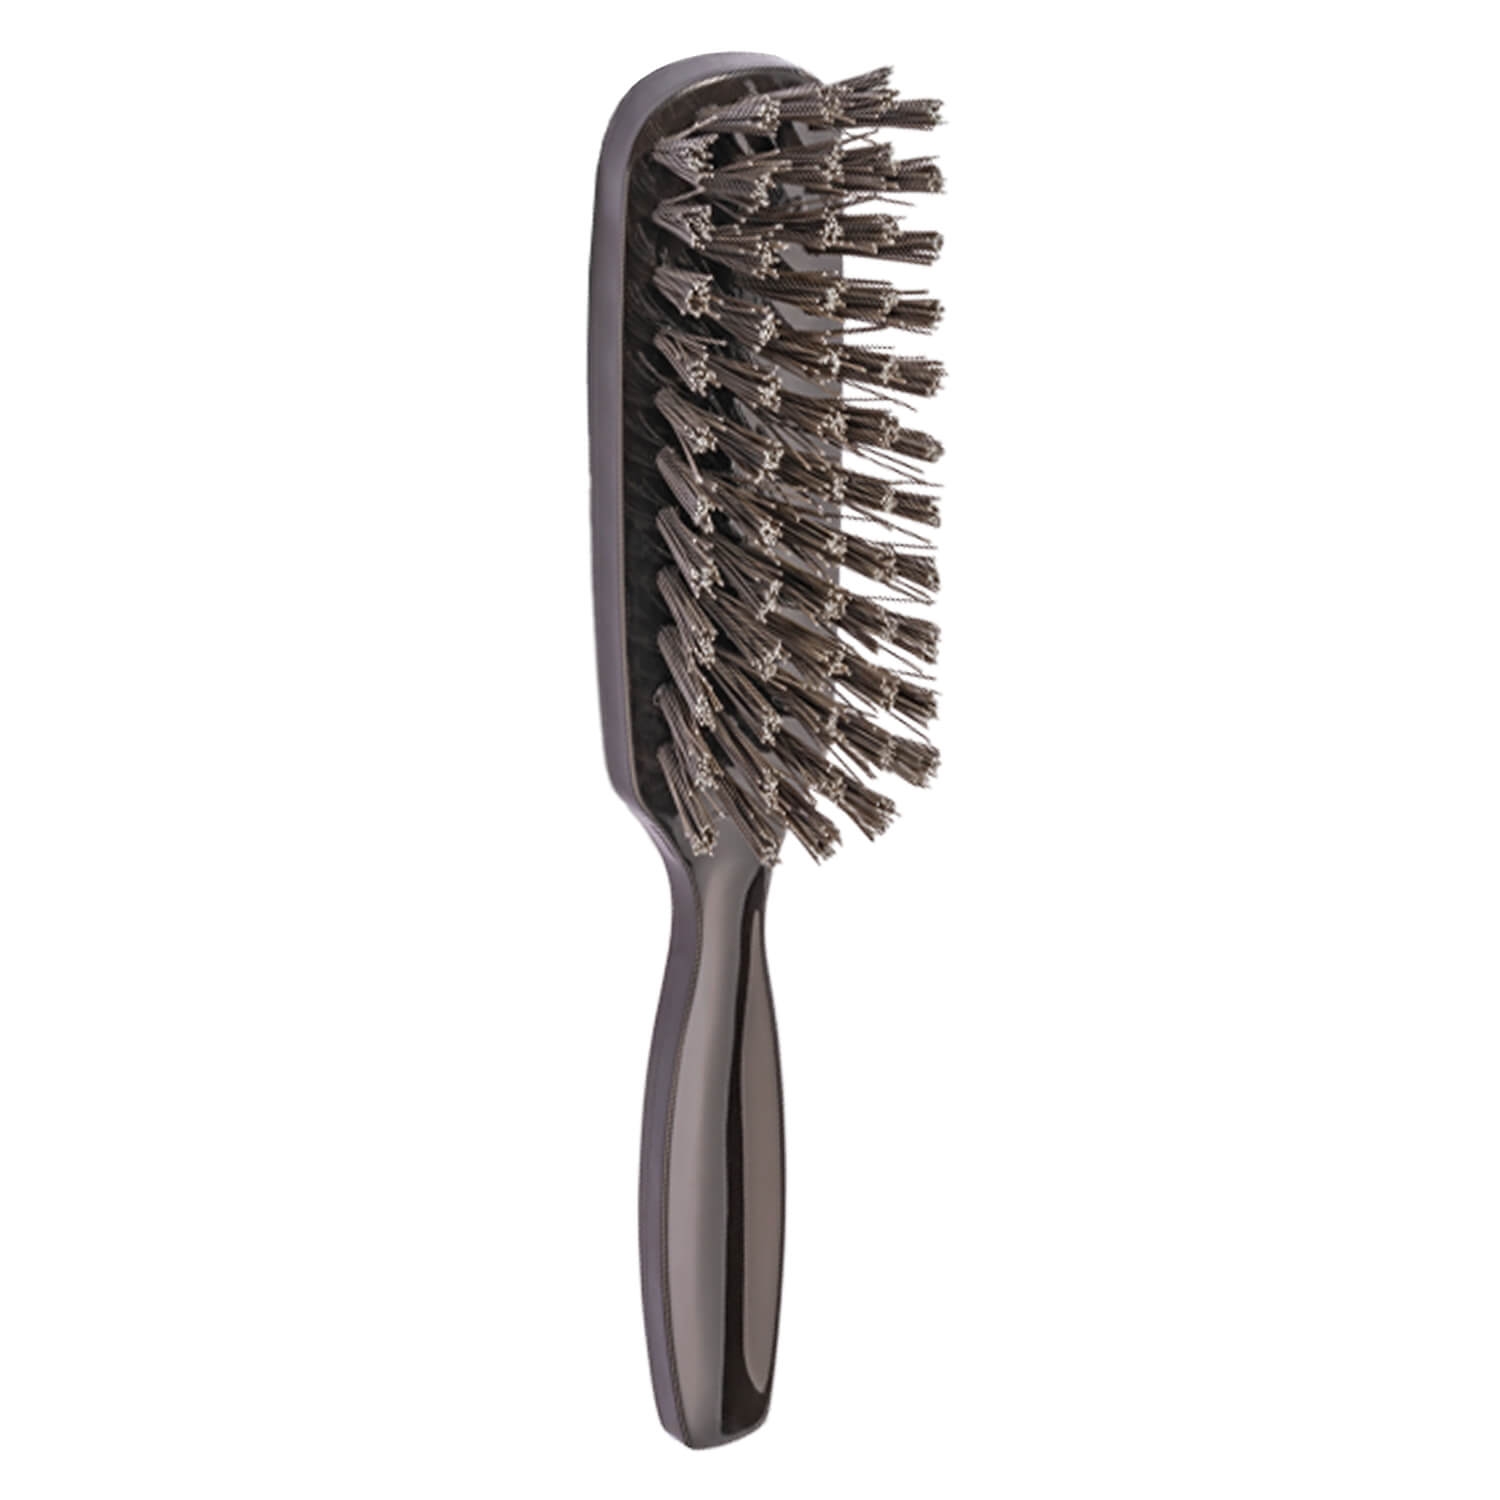 Produktbild von Trisa Hair Care - Haarbürste Brushing & Styling Vegan